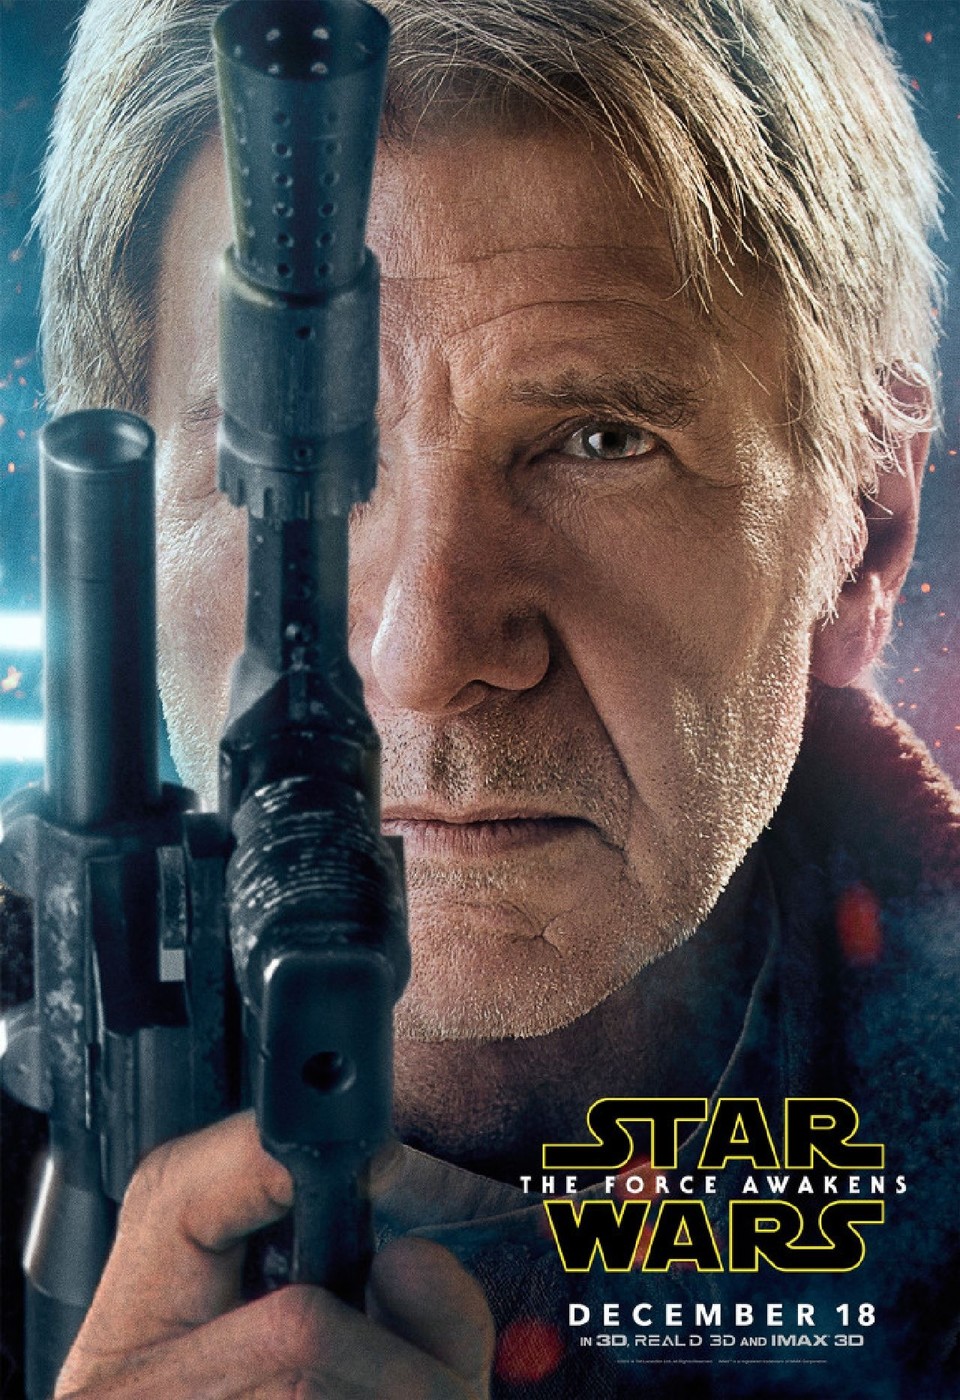 Harrison Ford als Han Solo auf einem Poster zum neuen Star-Wars-Film.